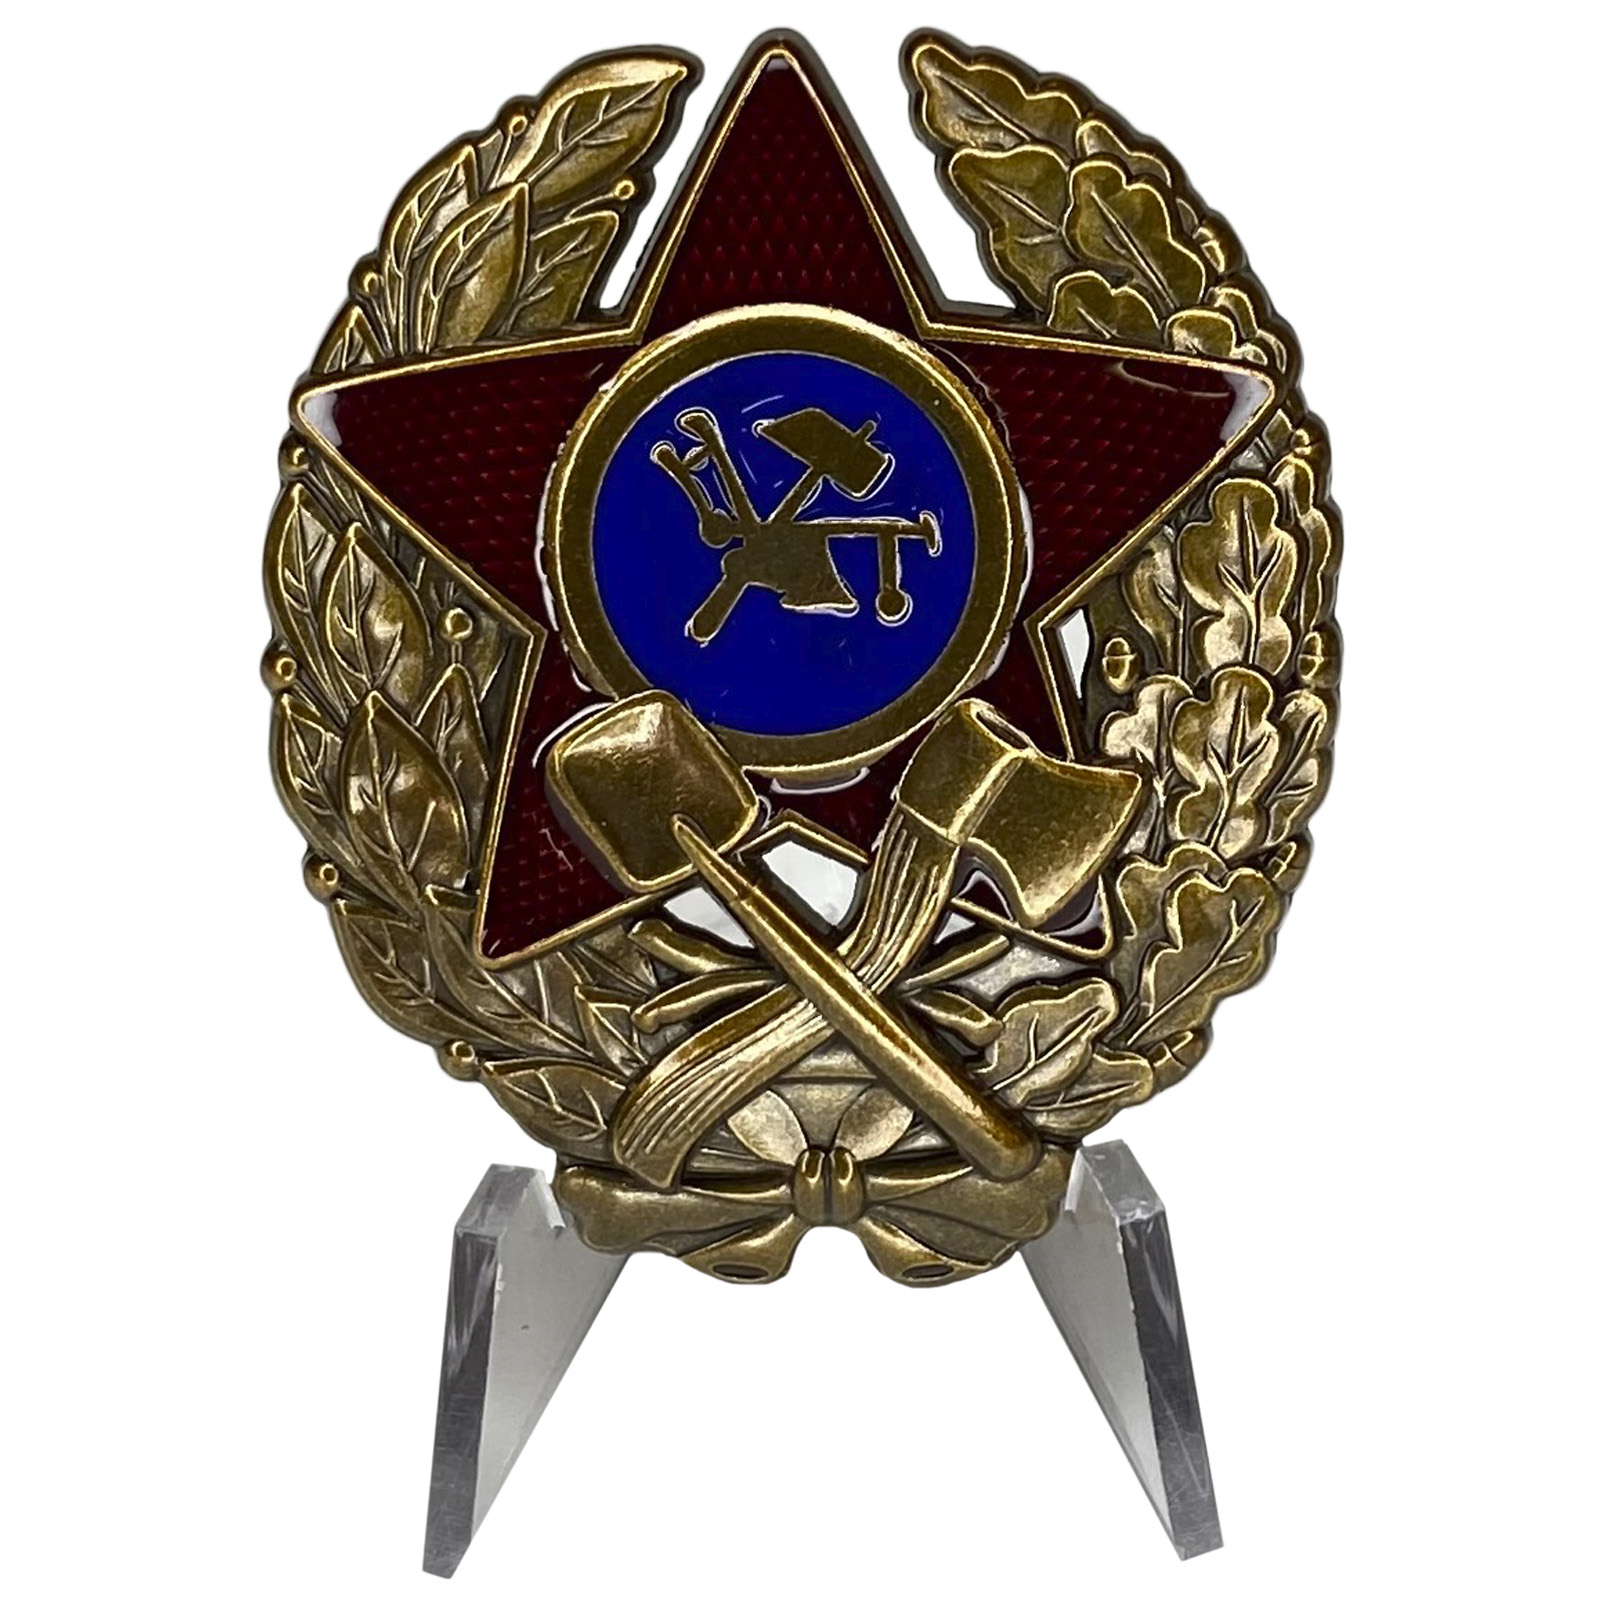 Знак Красного командира инженерных частей (РККА, (1918-1922 гг.)на подставке